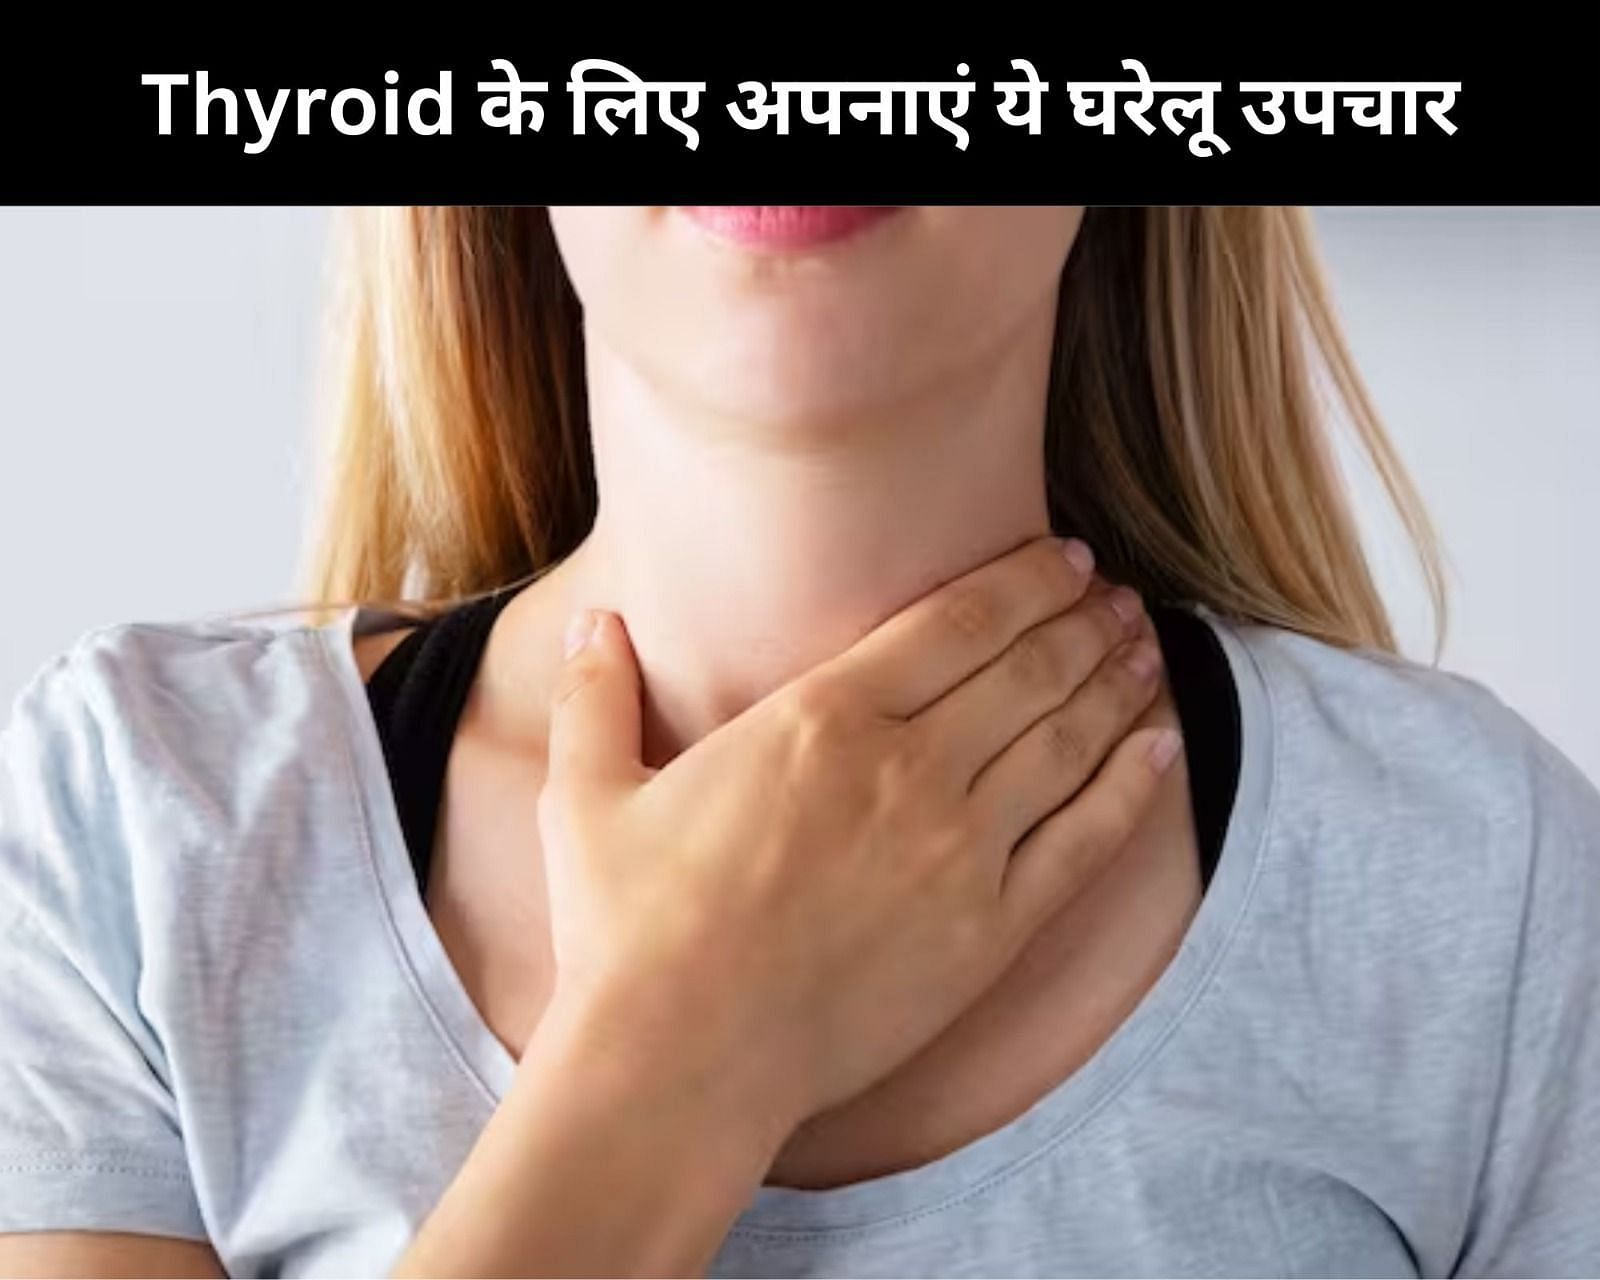 Thyroid के लिए अपनाएं ये 8 घरेलू उपचार (फोटो - sportskeedaहिन्दी)